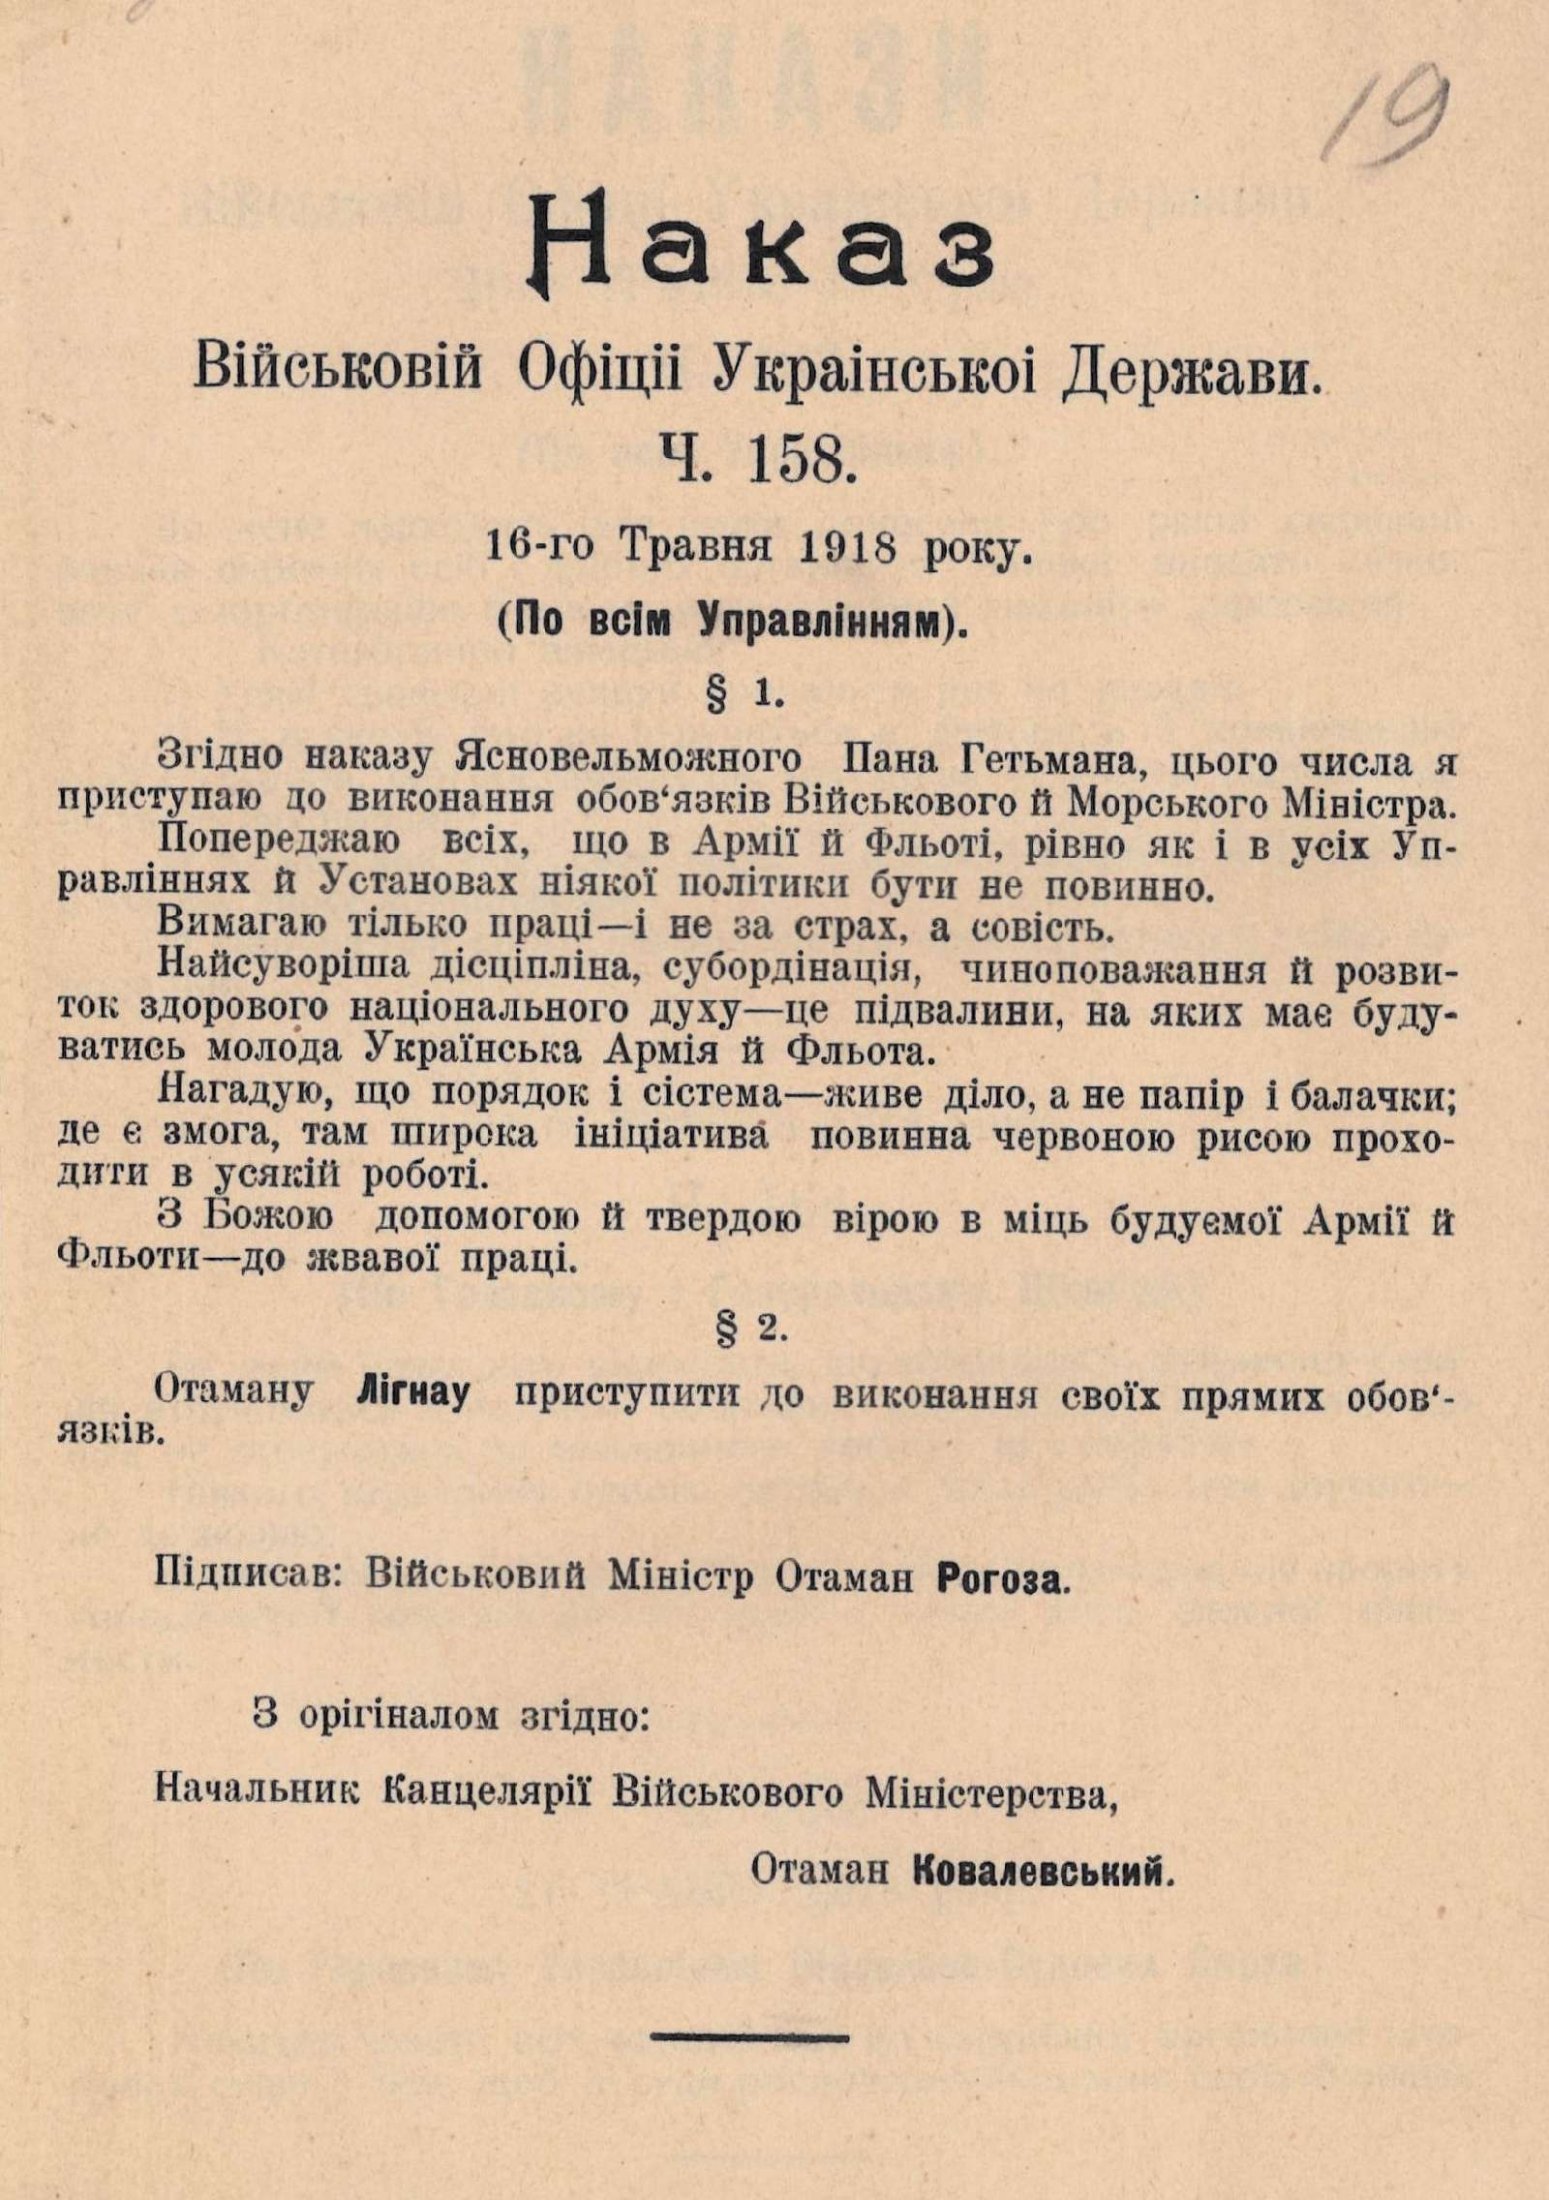 Наказ Військової офіції Української Держави про вступ отамана Олександра Рогози на посаду Військового і Морського міністра. 16 травня 1918 року.